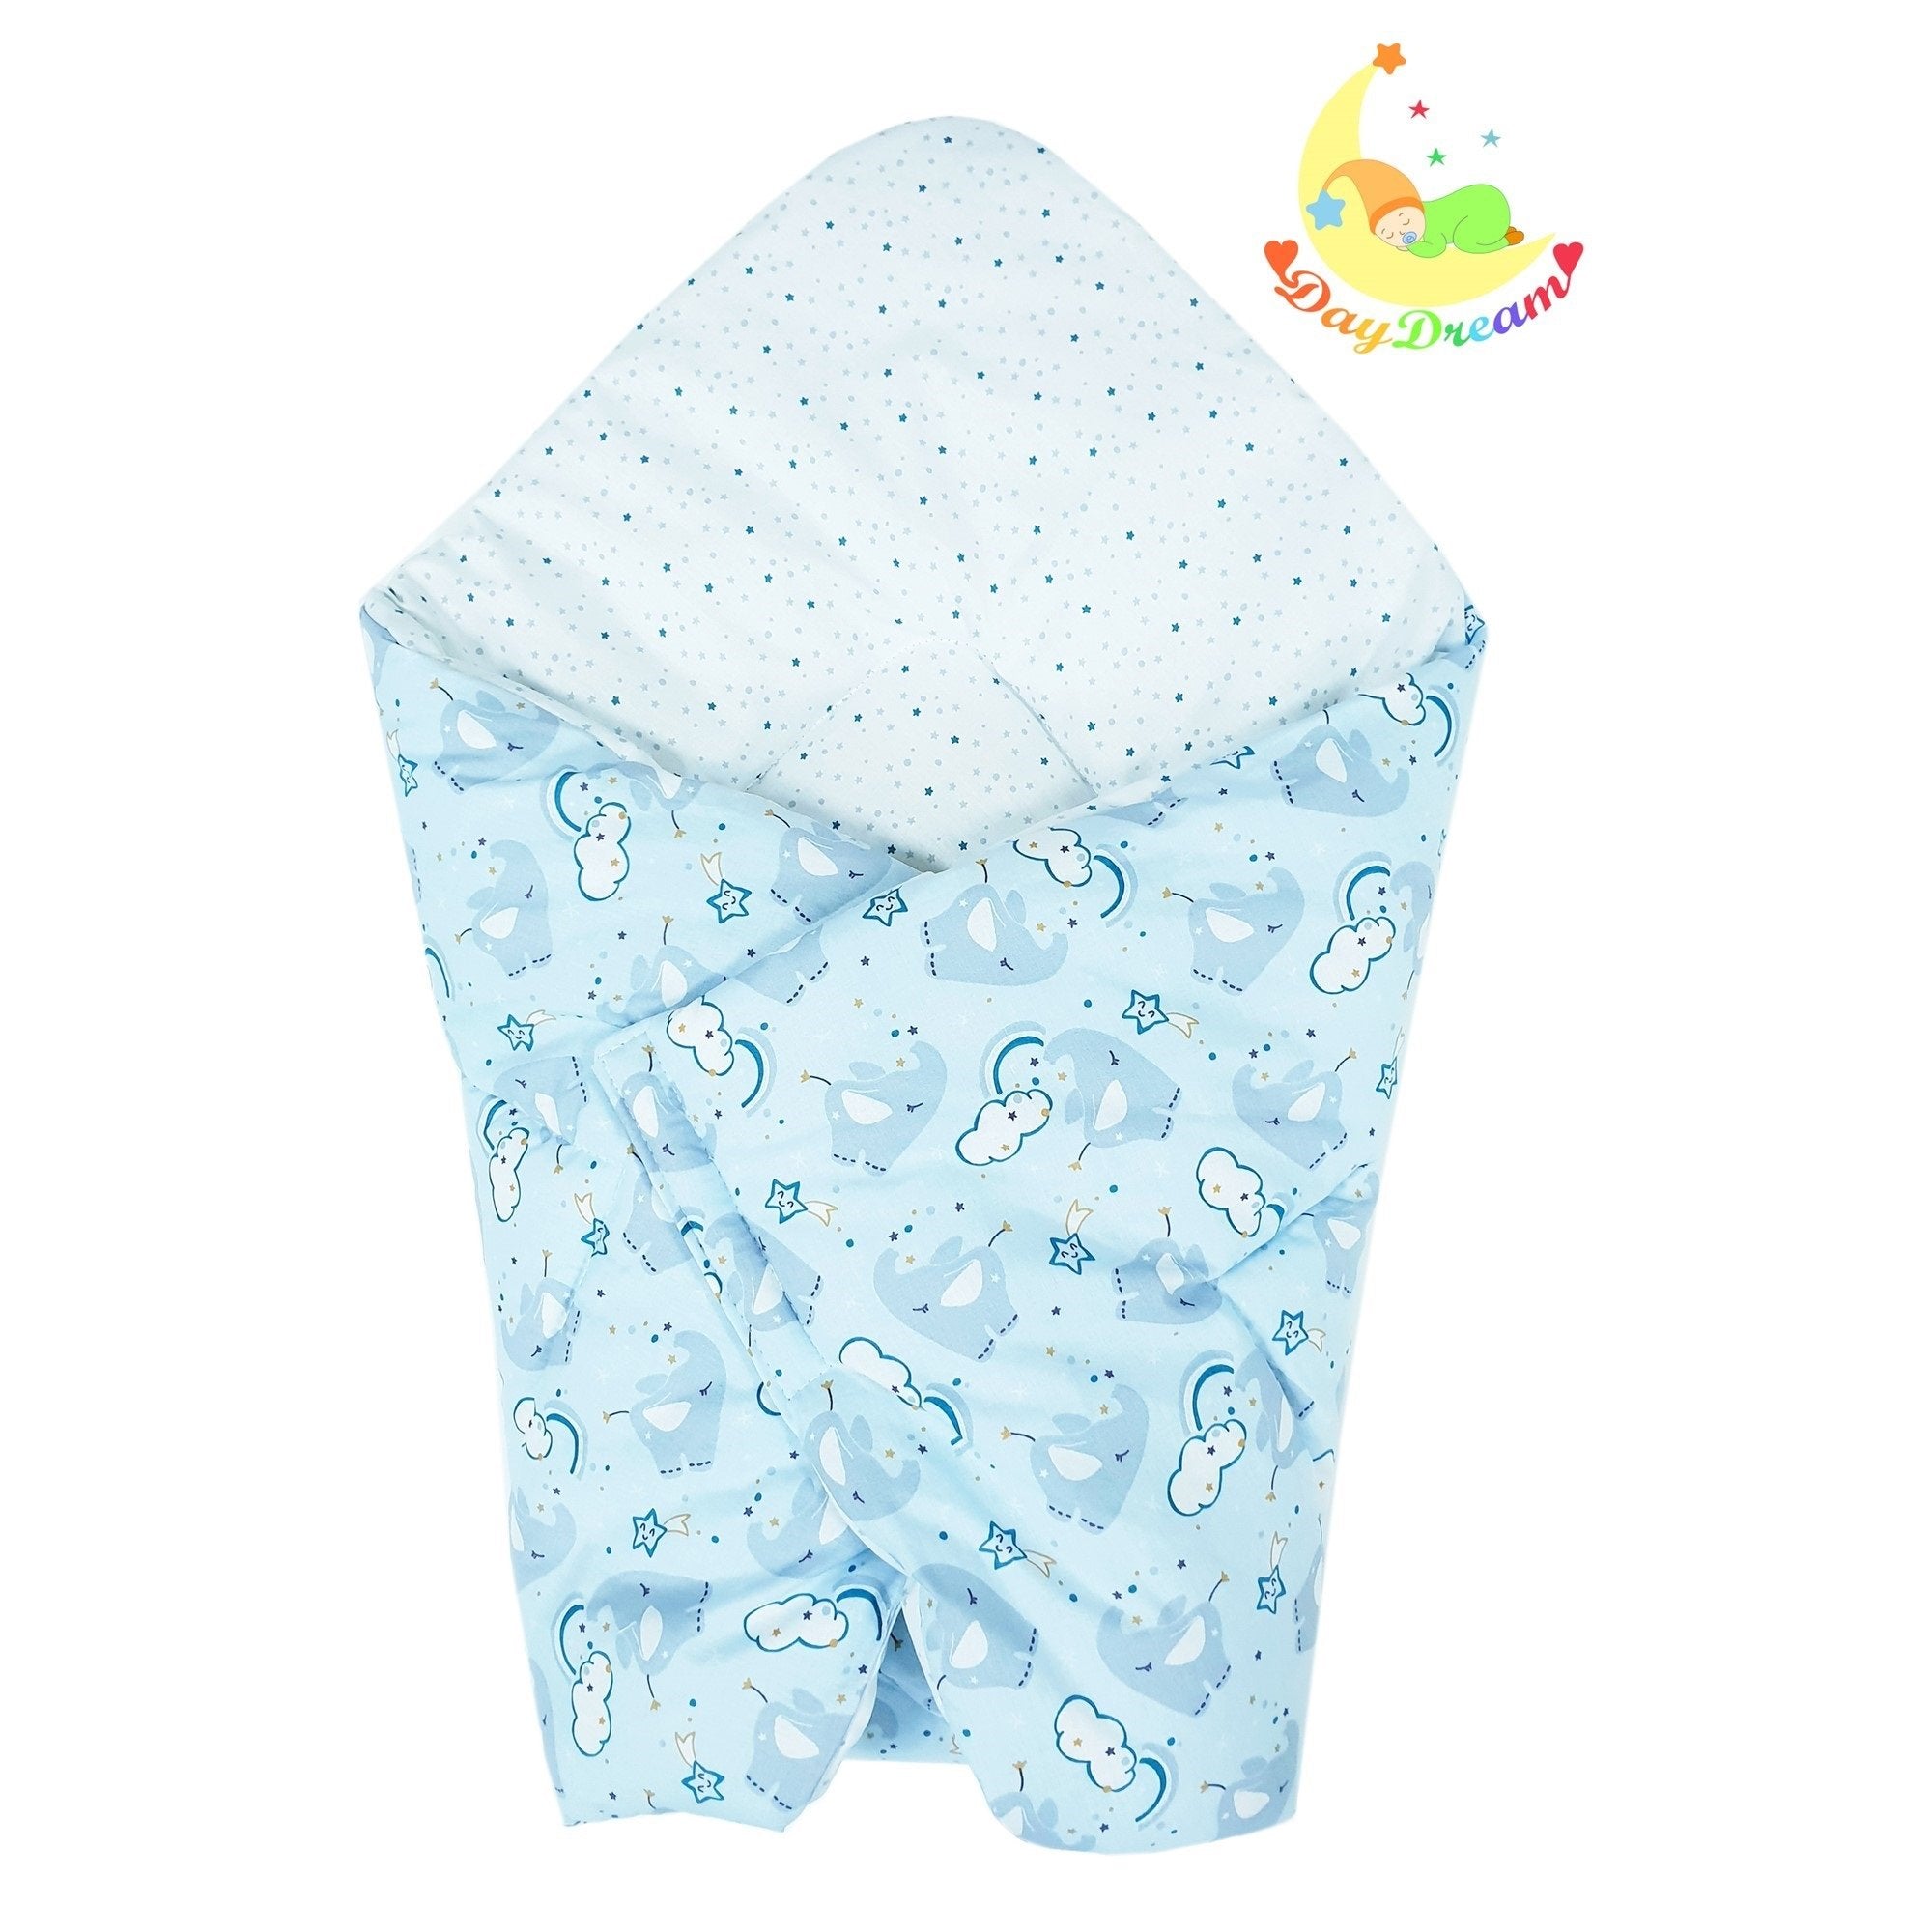 Jastuk za nošenje bebe - Plavi slonić - Sve za bebu